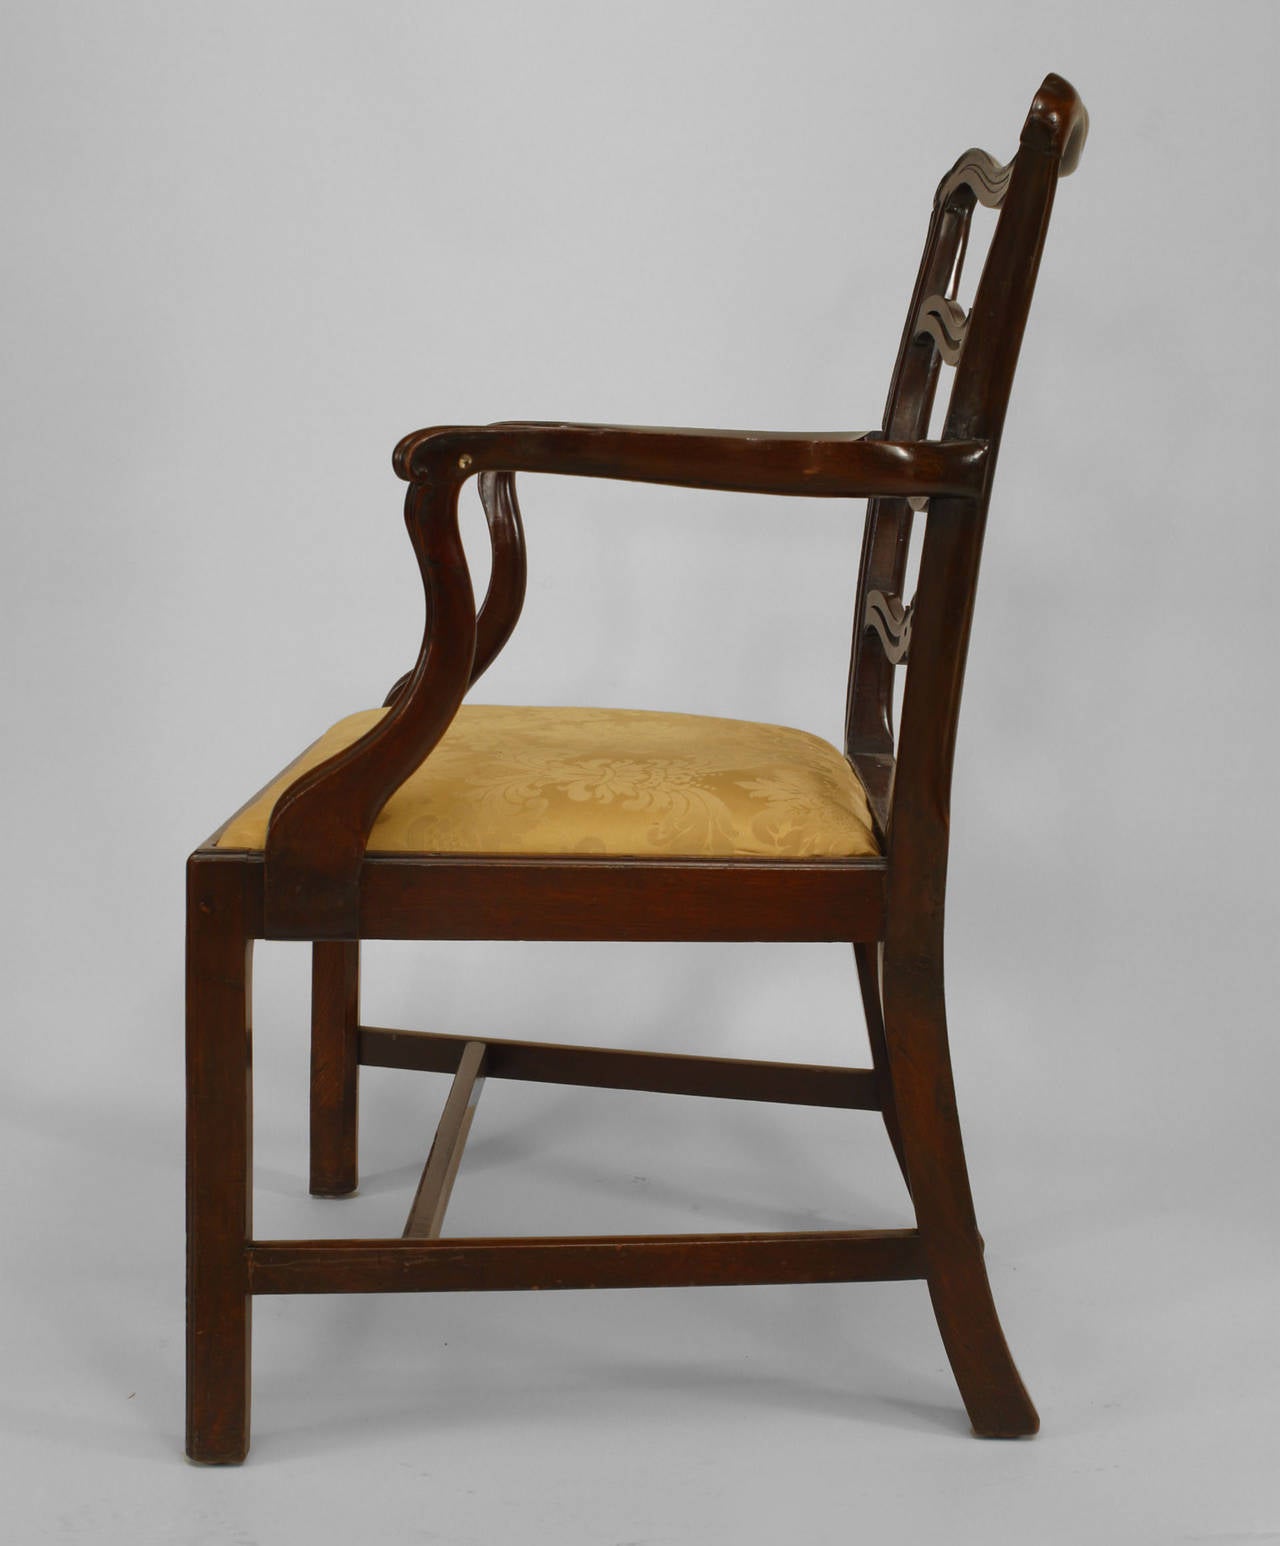 Satz von 10 Stühlen aus Mahagoni im englischen georgianischen Stil (19. Jh.) mit Leiterlehne und Golddamast-Sitz (2 Armlehnstühle: 25¬Ω 